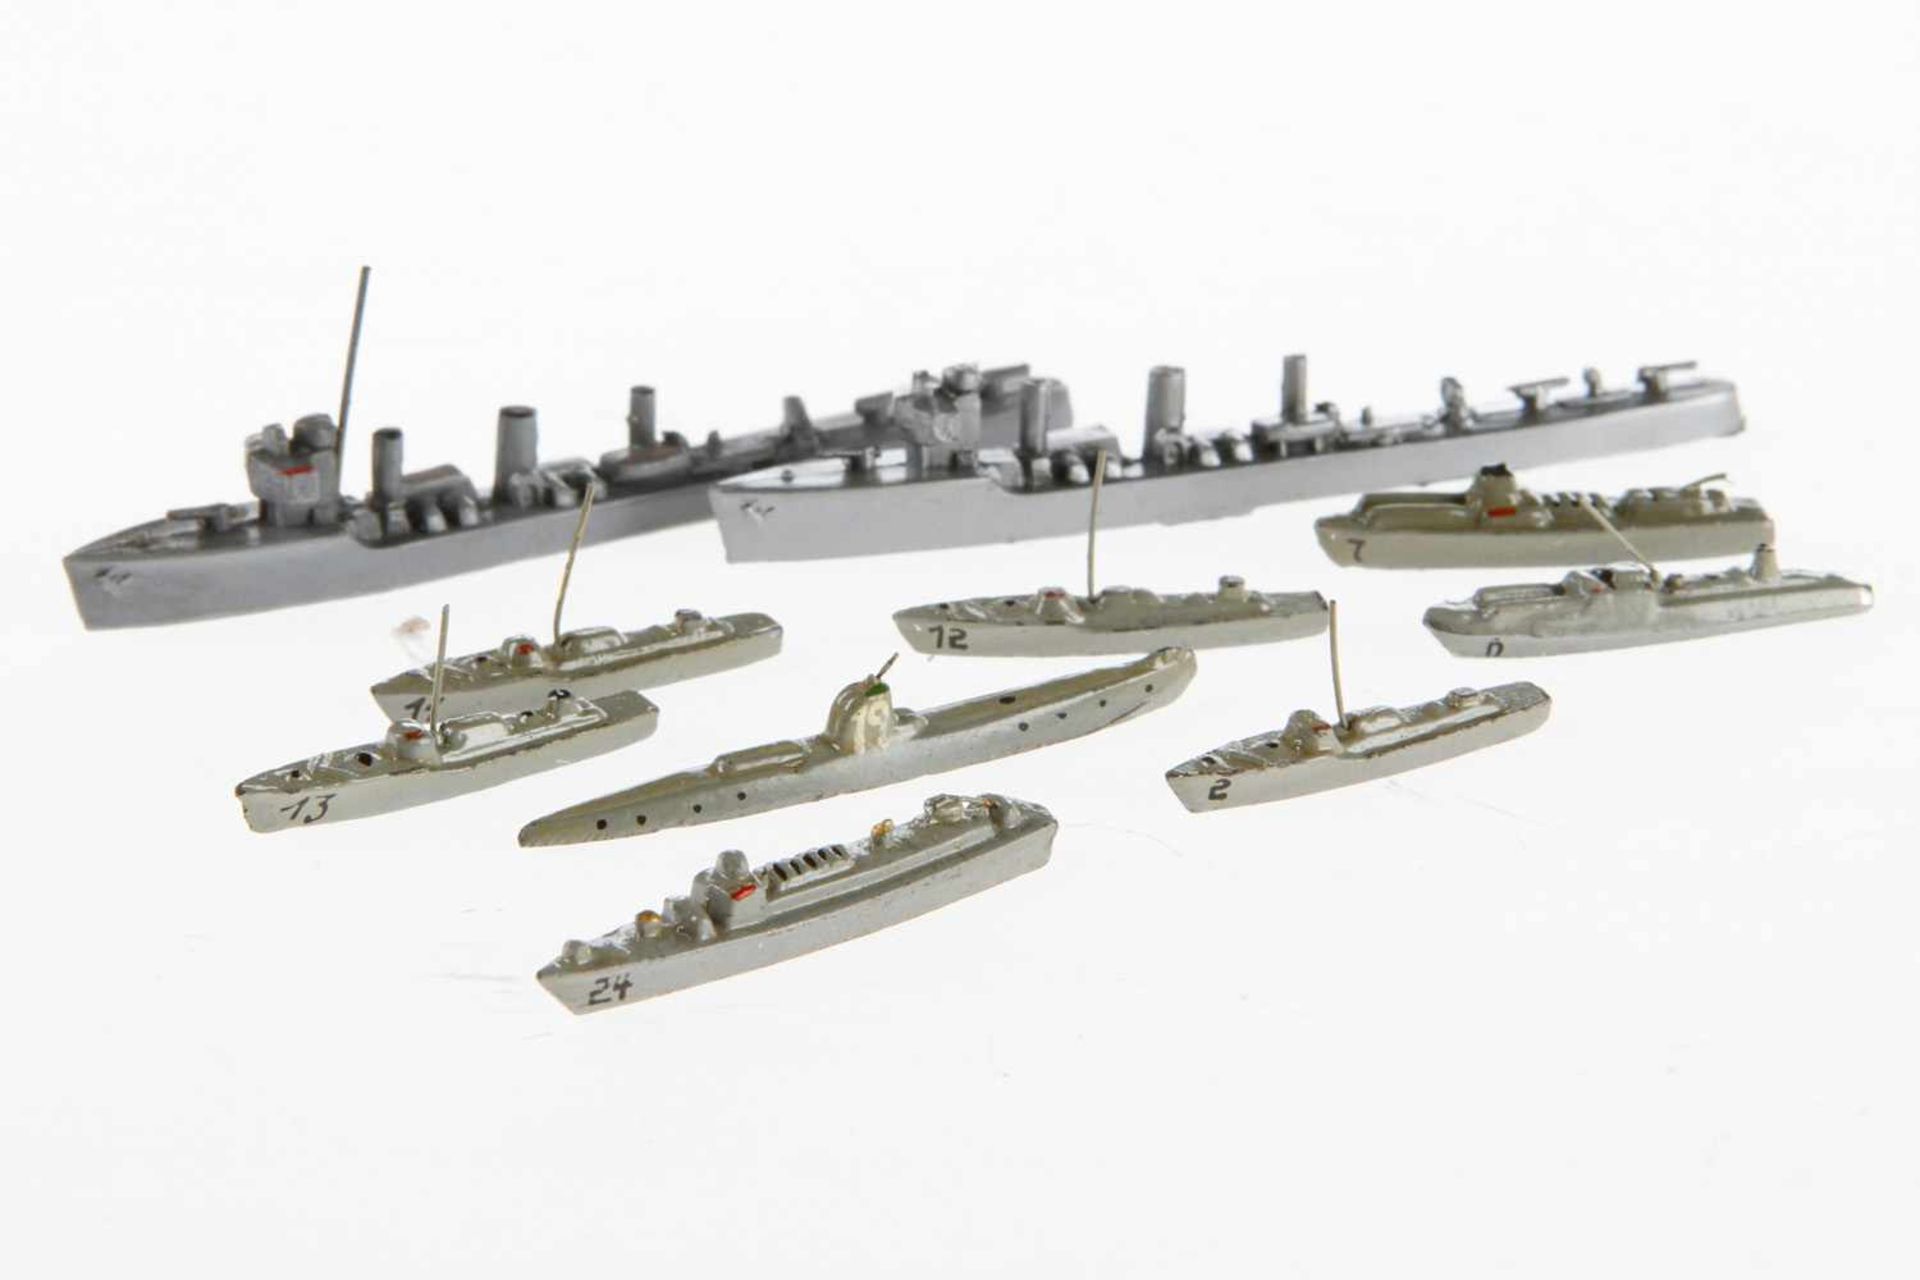 Konv. 10 Wiking Modellschiffe, Guss: 2x "Generali Kl." (silberfarben und grau), U-Boot "19", 4x